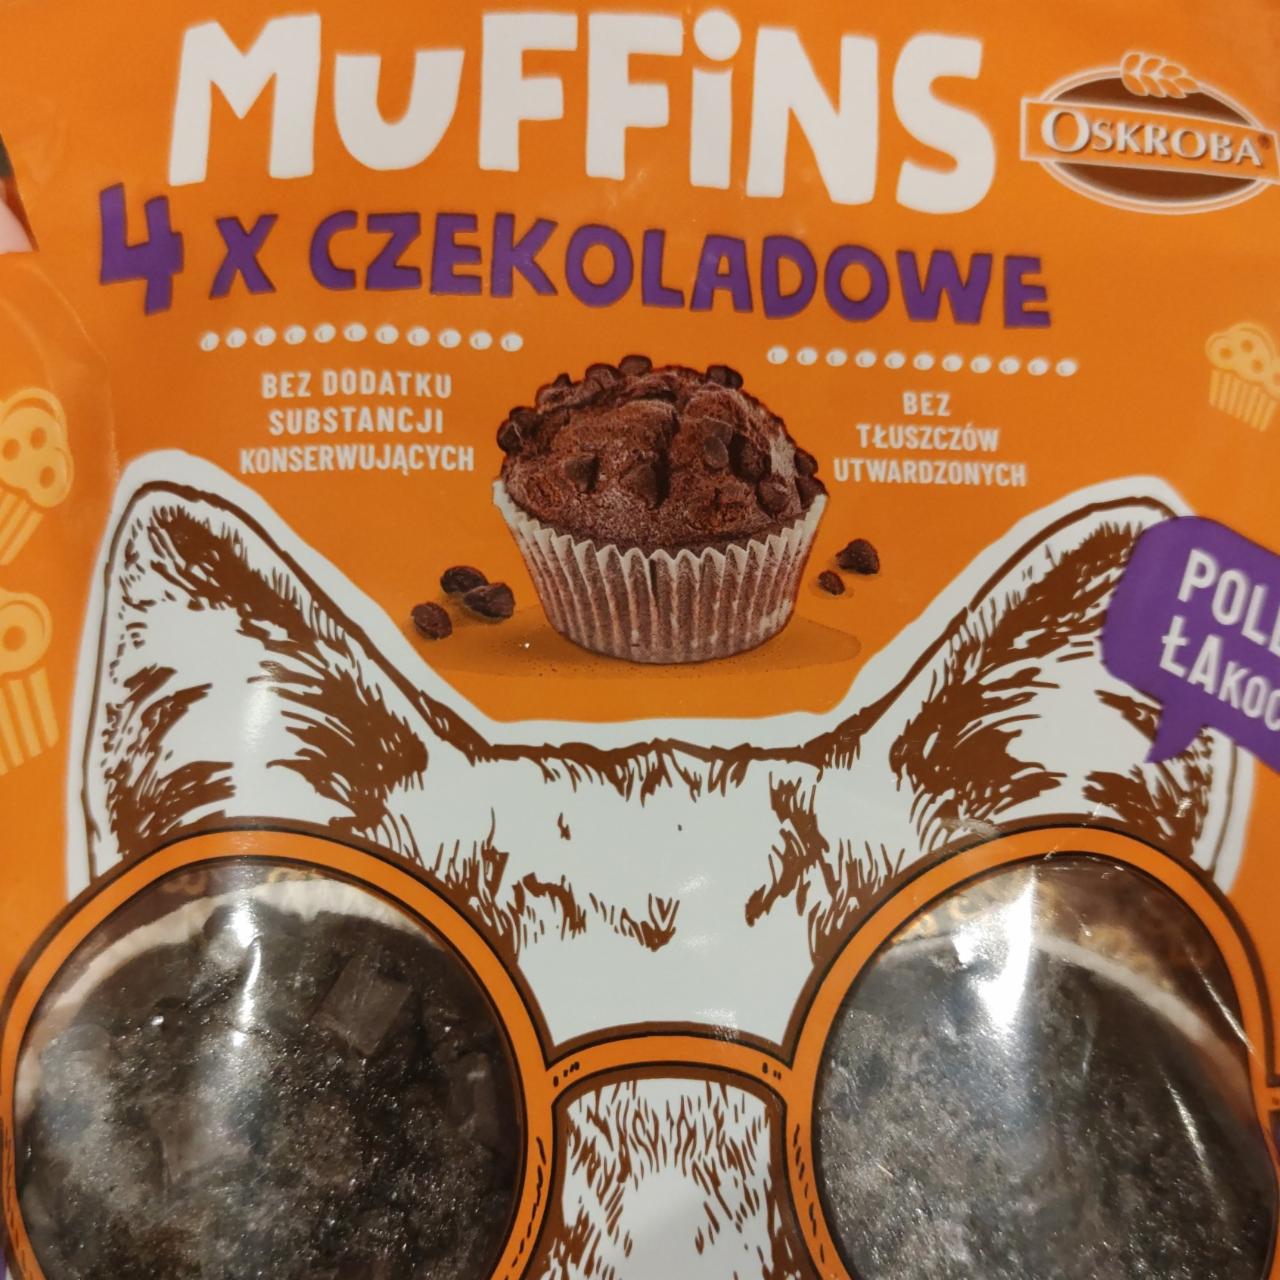 Zdjęcia - Muffins czekoladowe Oskroba